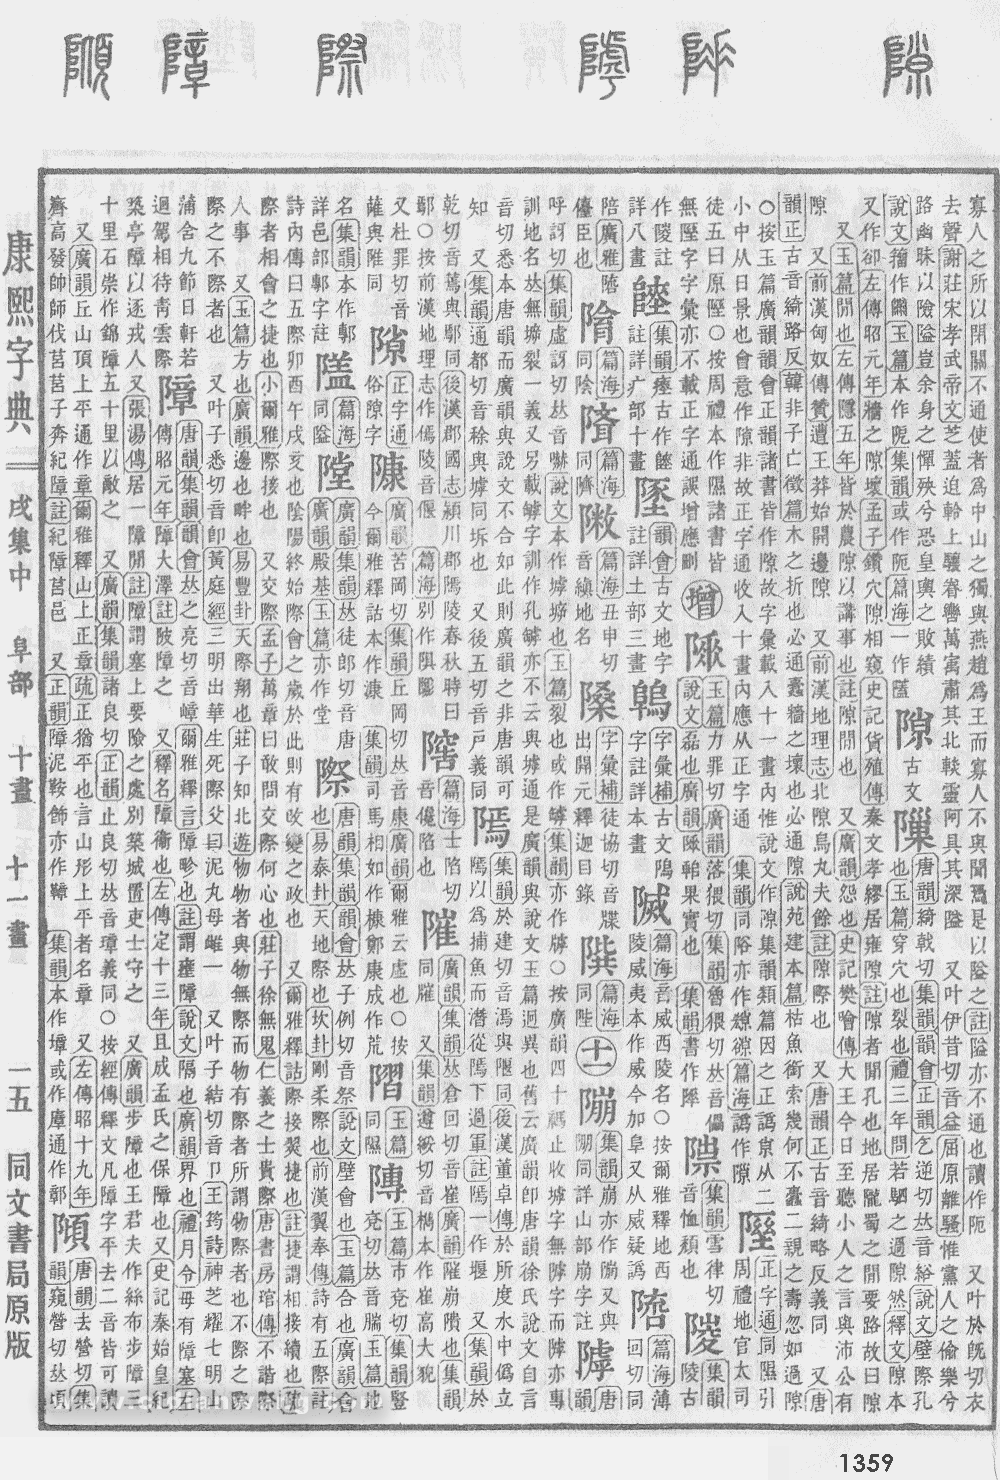 康熙字典掃描版第1359頁